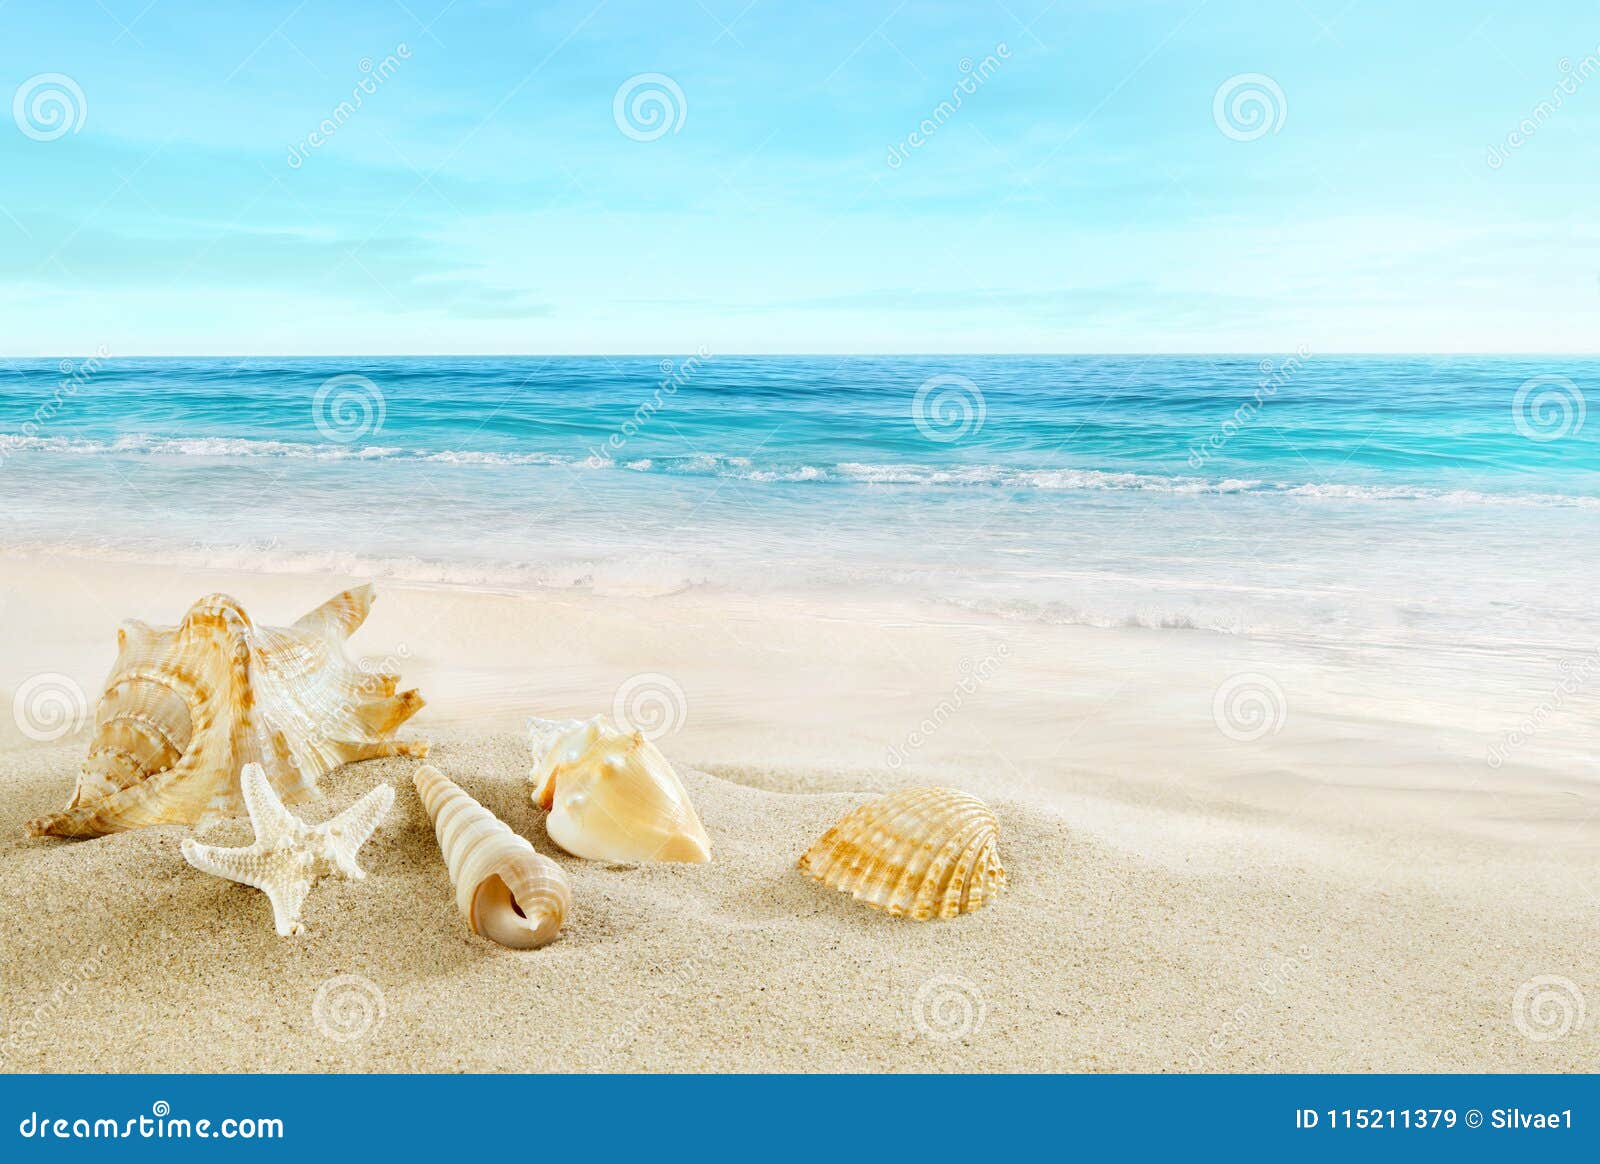 tropical beach. shells on the sand.